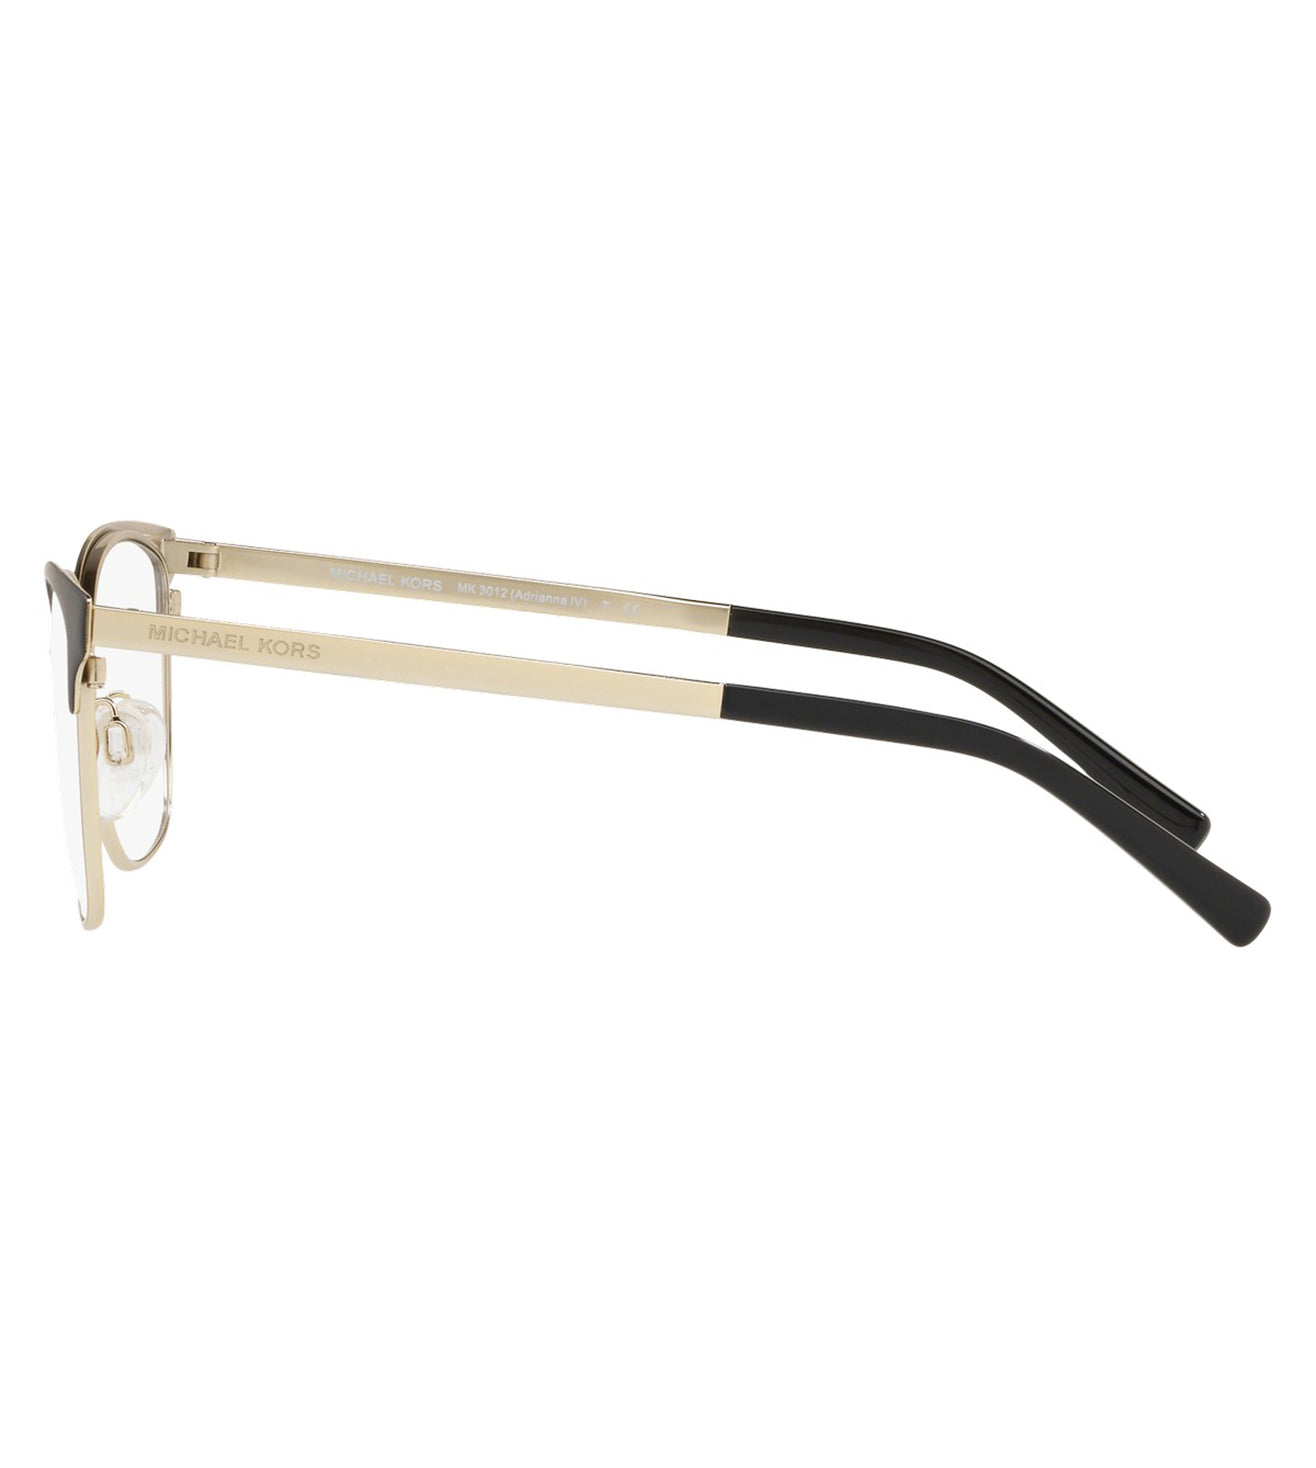 Cateye Black Eyeglasses